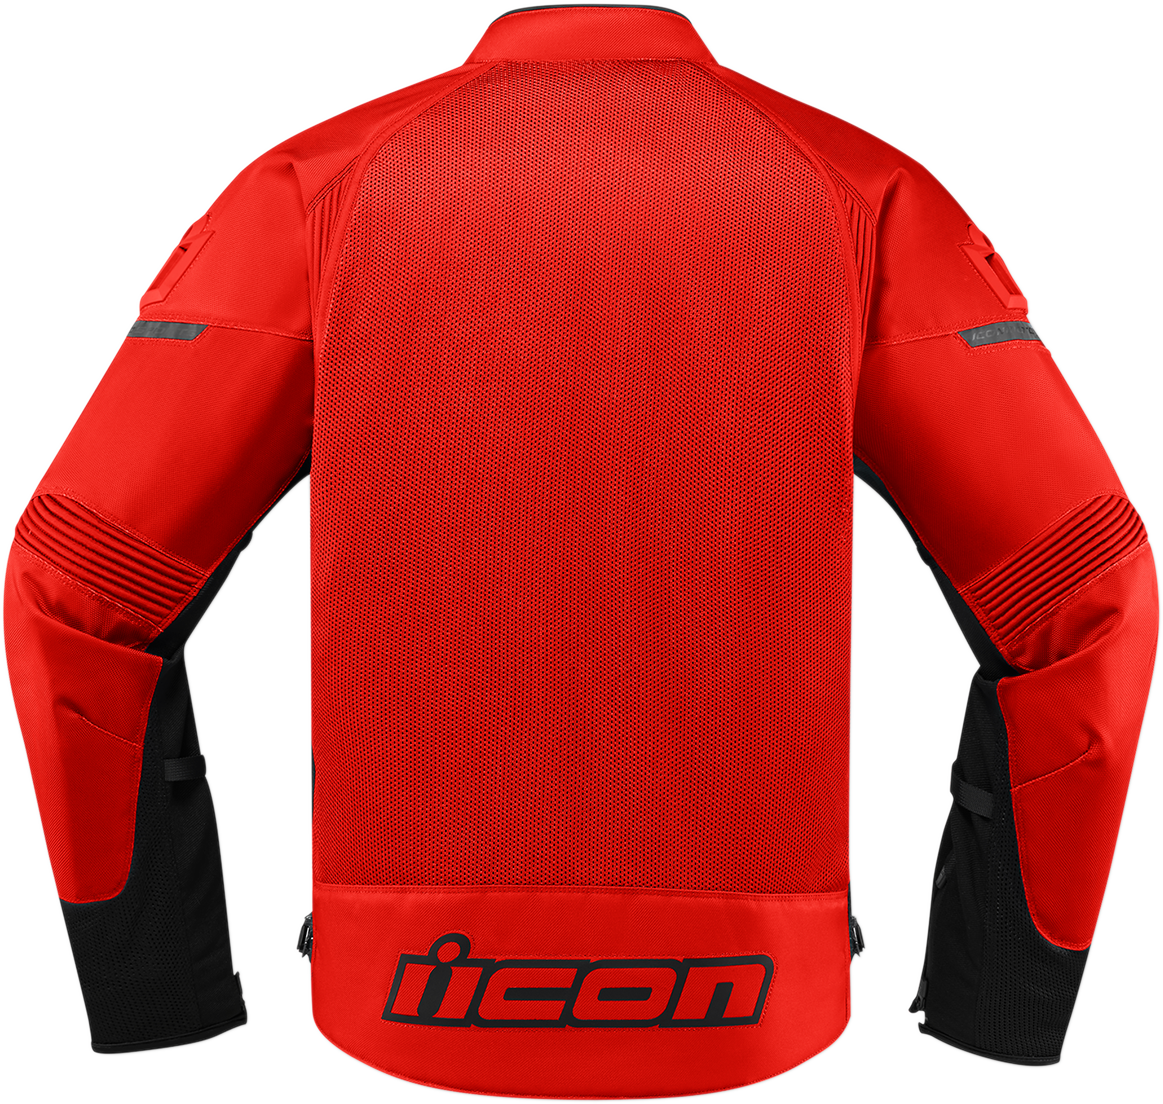 ICON Contra2™ Jacket - Red - Medium 2820-4772